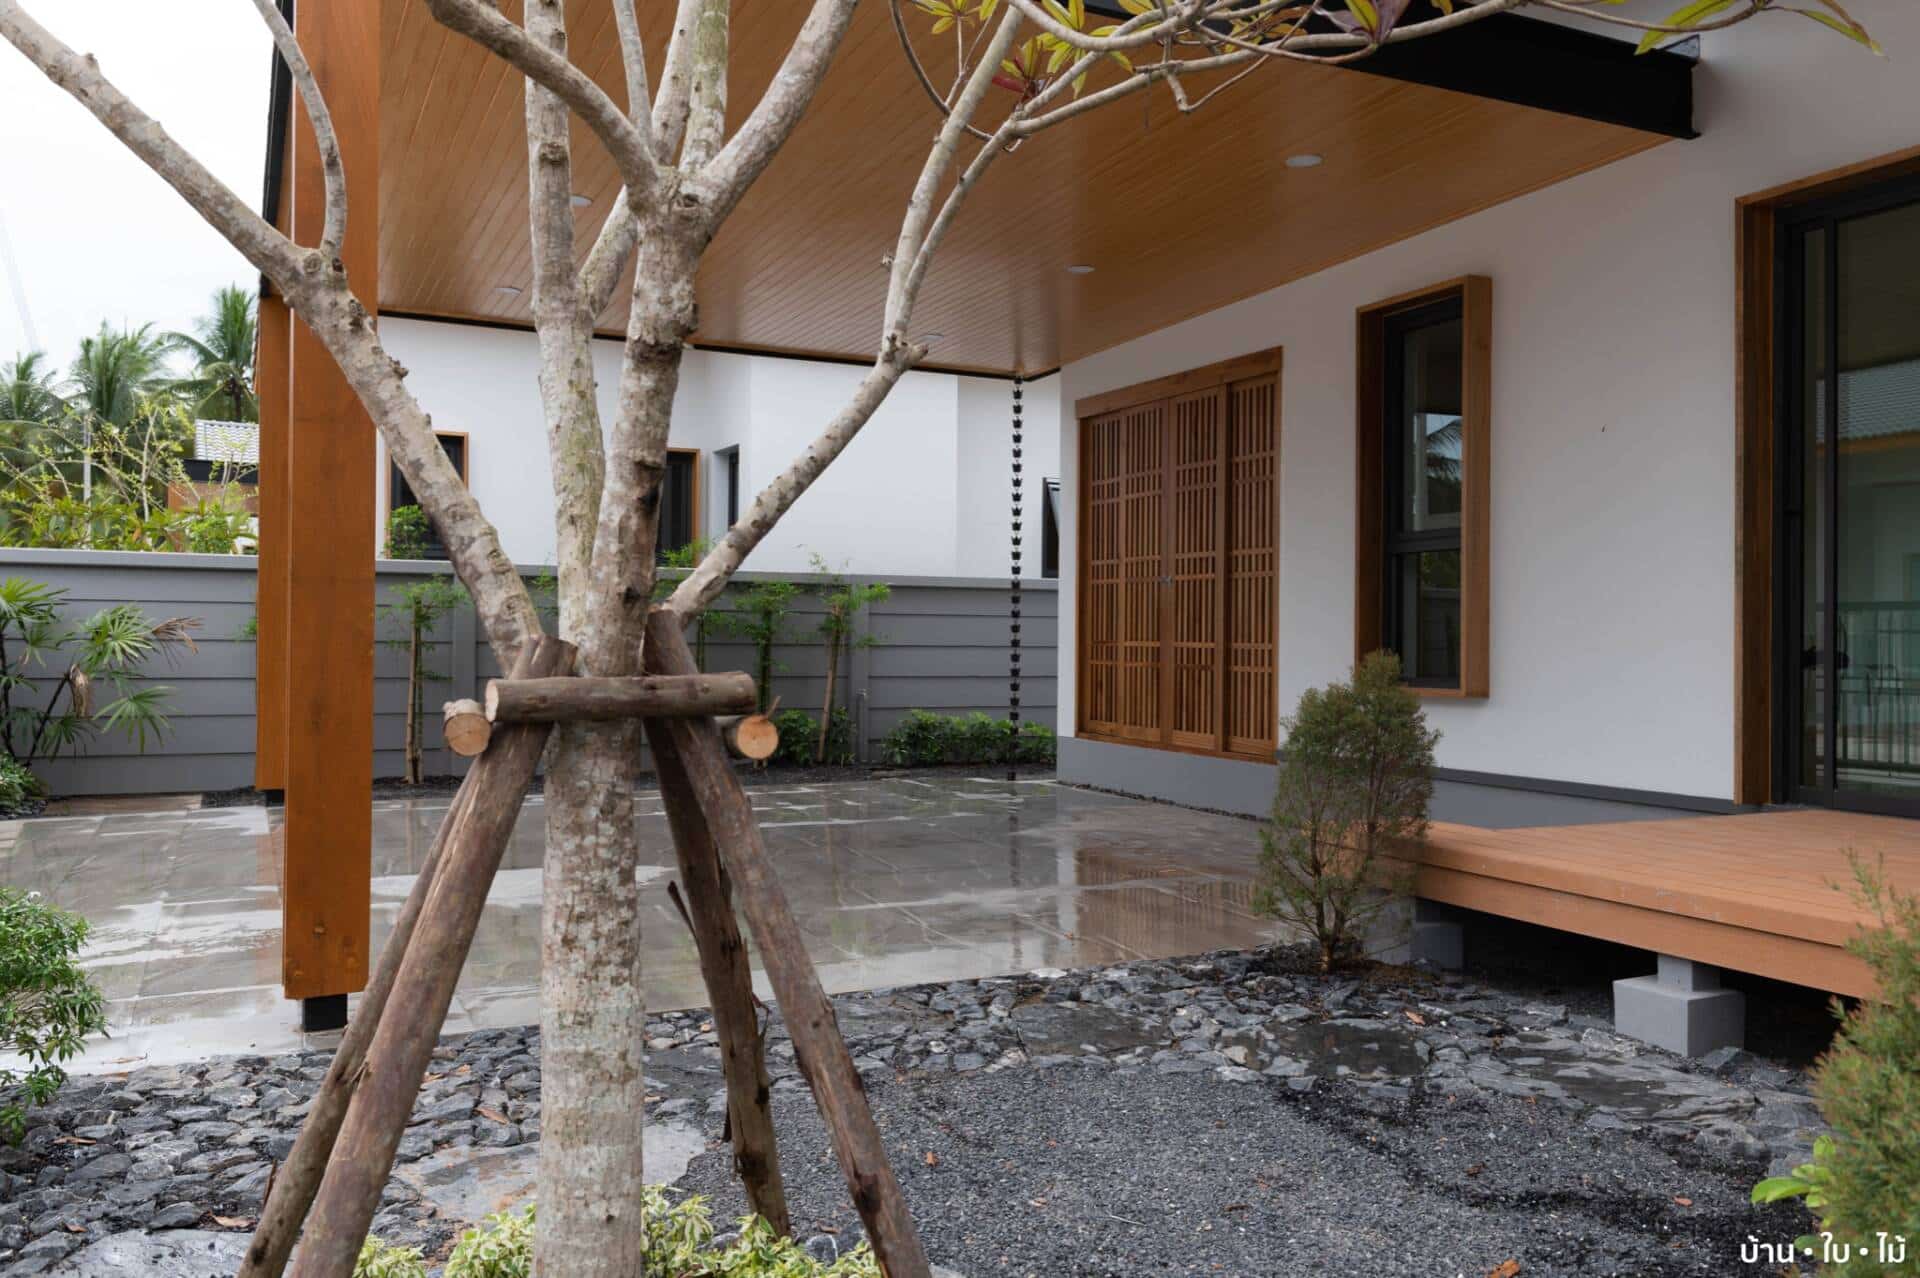 Lấy cảm hứng từ những ngôi nhà thiết kế kiểu Nhật, gia chủ xây nhà 1 tầng theo phong cách tối giản, thoáng sáng, yên bình, để 10 năm không bị lỗi thời